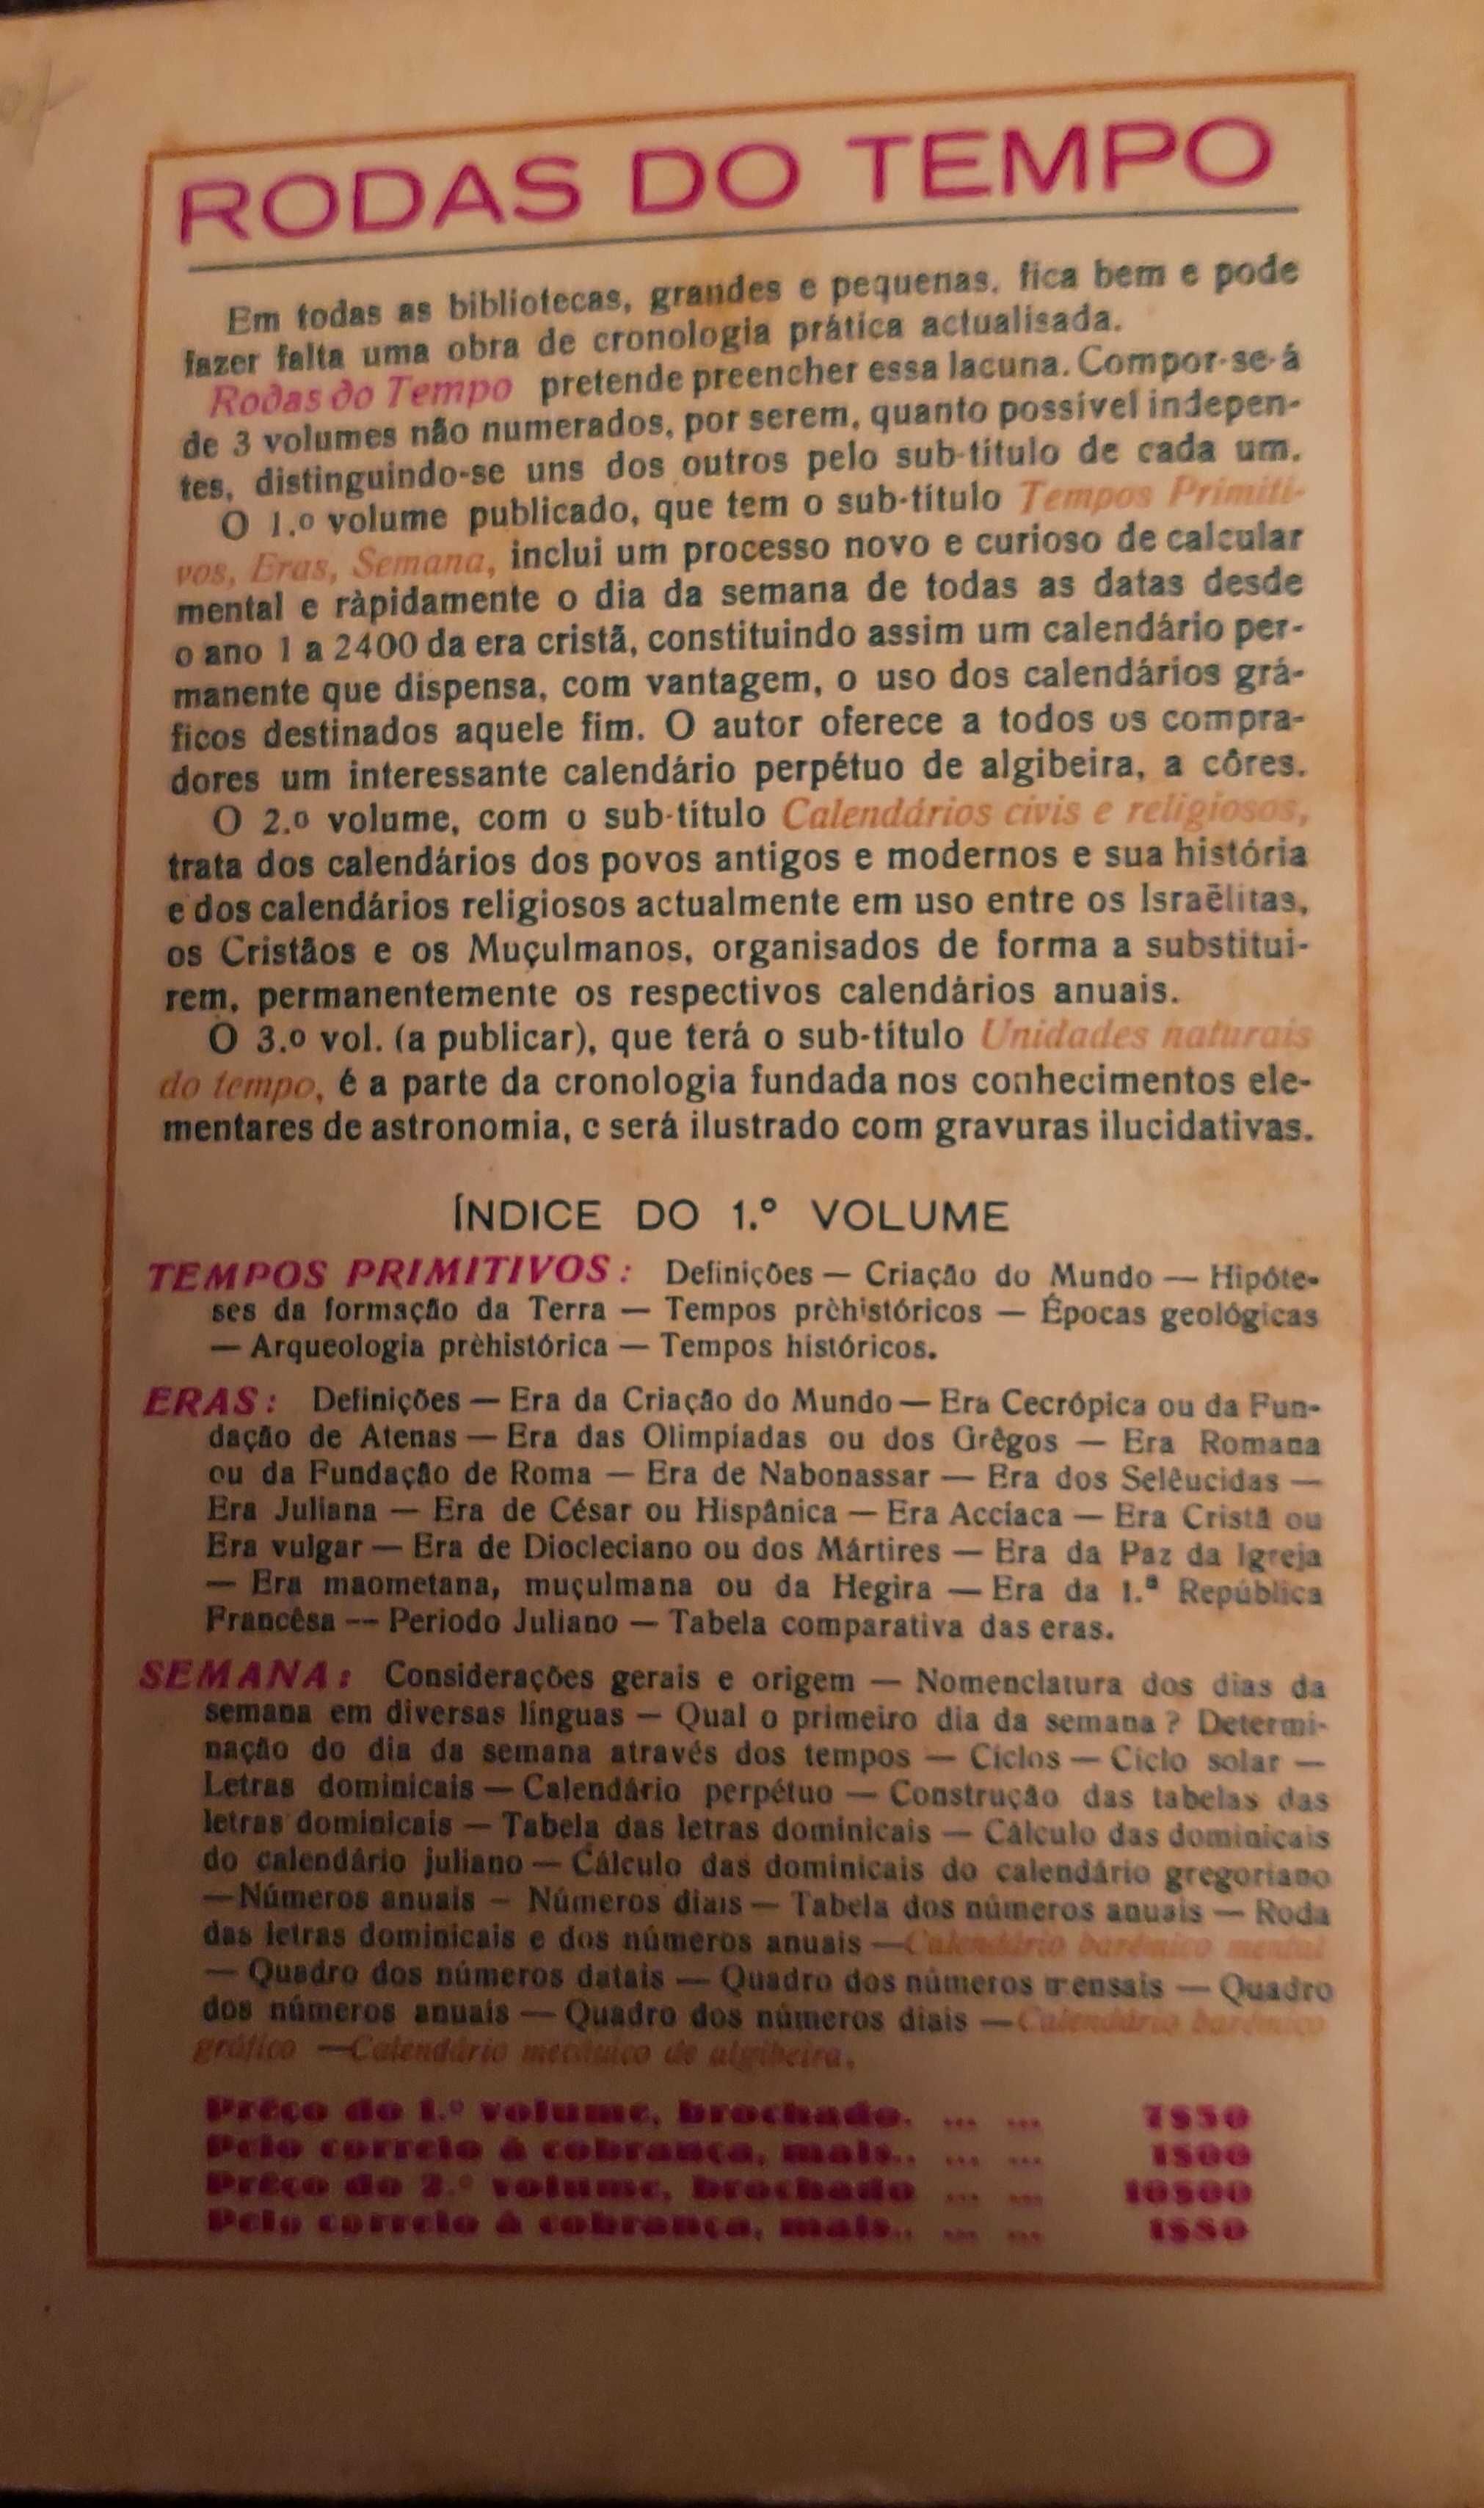 Calendarios  gregos e latinos e outros. 1932. Dois livros